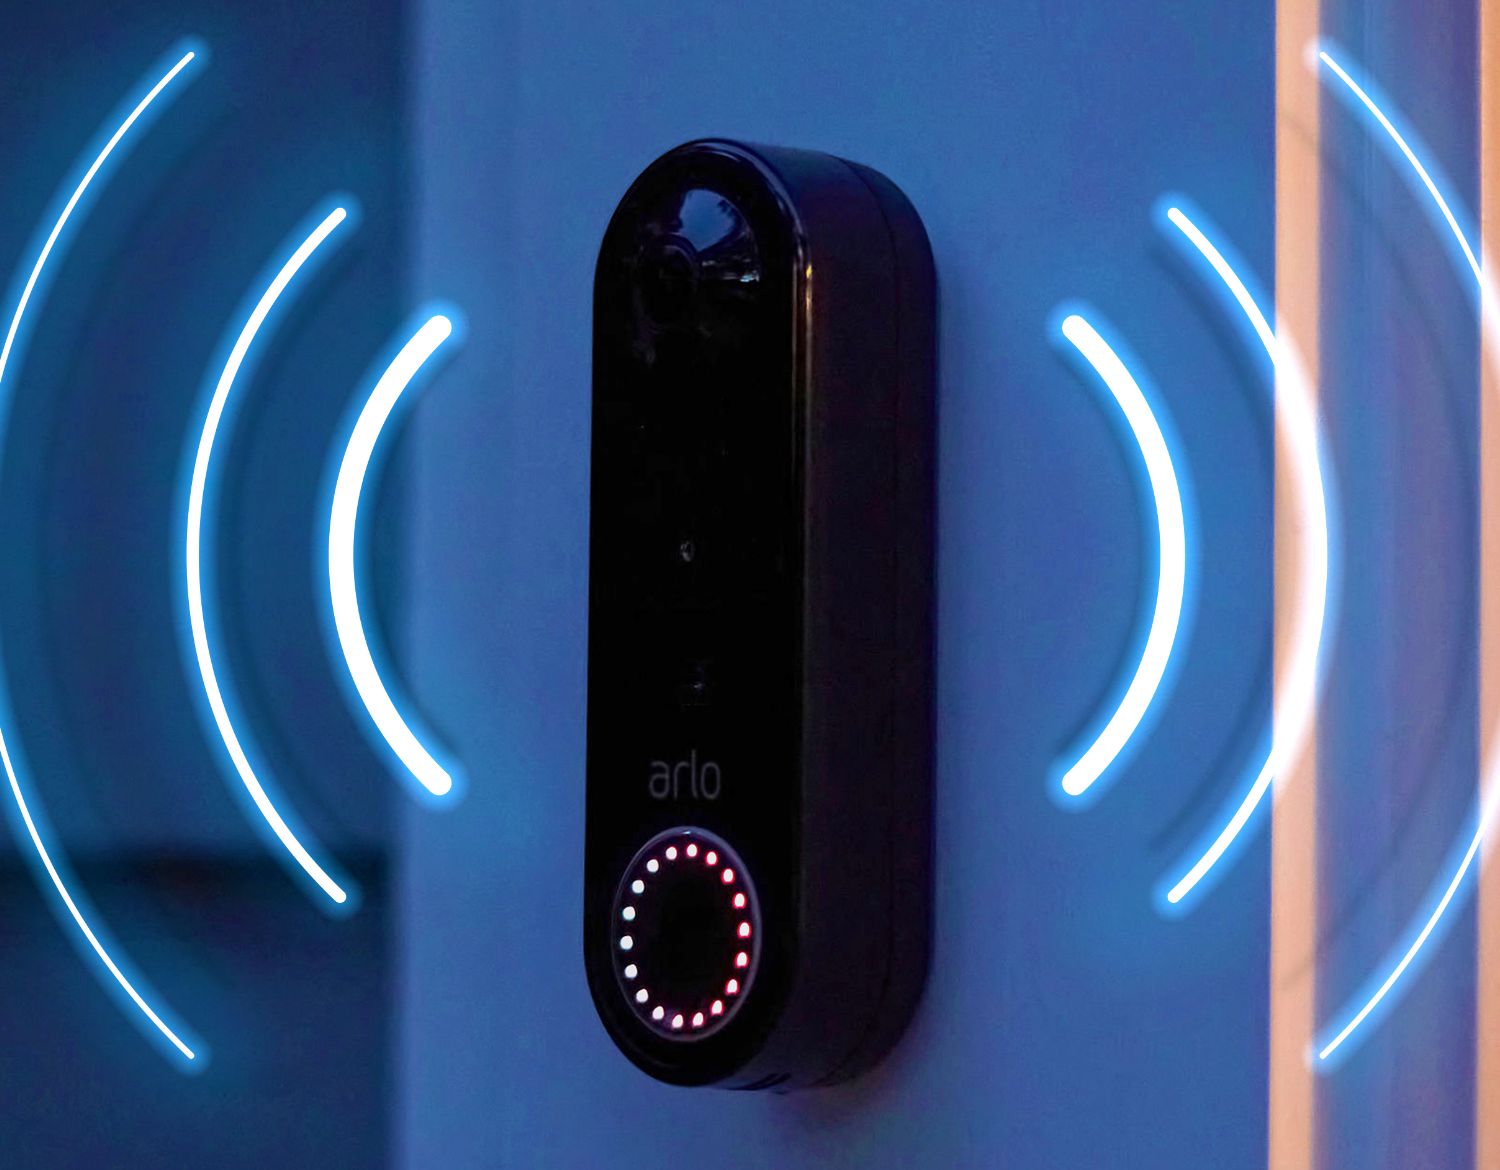 En bild illustrerar en Arlo-trådlös videodörrklocka som ljuder på natten